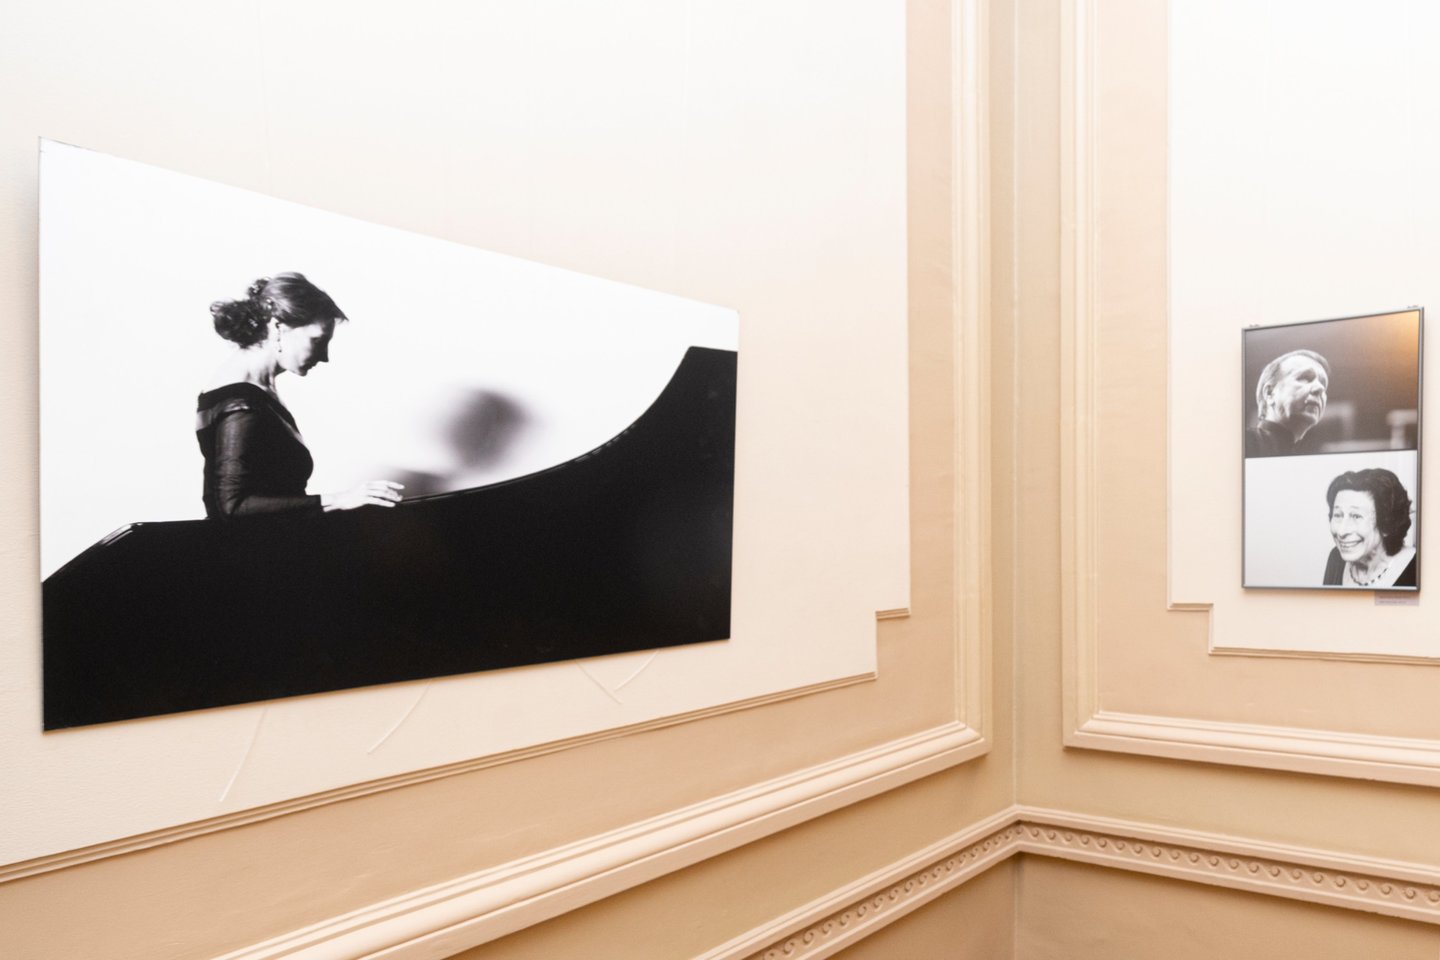 Filharmonijos fojė eksponuojama D.Matvejevo fotografijų paroda atspindinti ryškias festivalio dešimtmečio akimirkas, nuotaikas, įspūdžius.<br> D.Matvejevo nuotr.